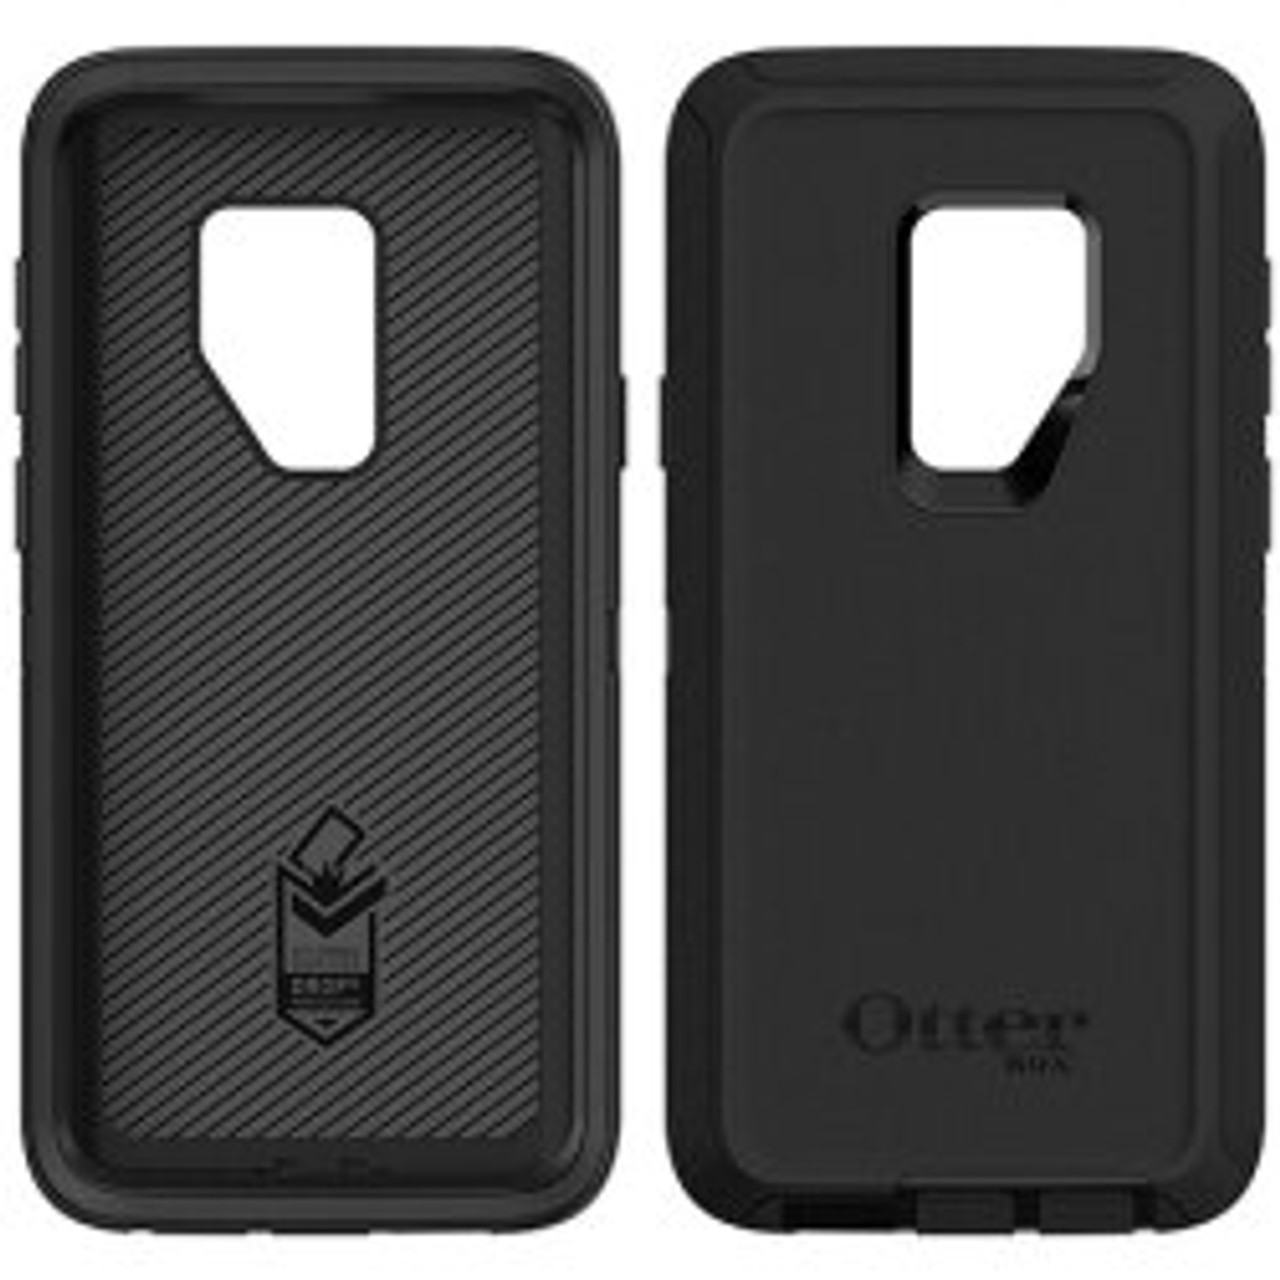 حافظة سلسلة OtterBox Defender لهاتف Samsung Galaxy S9 + Plus